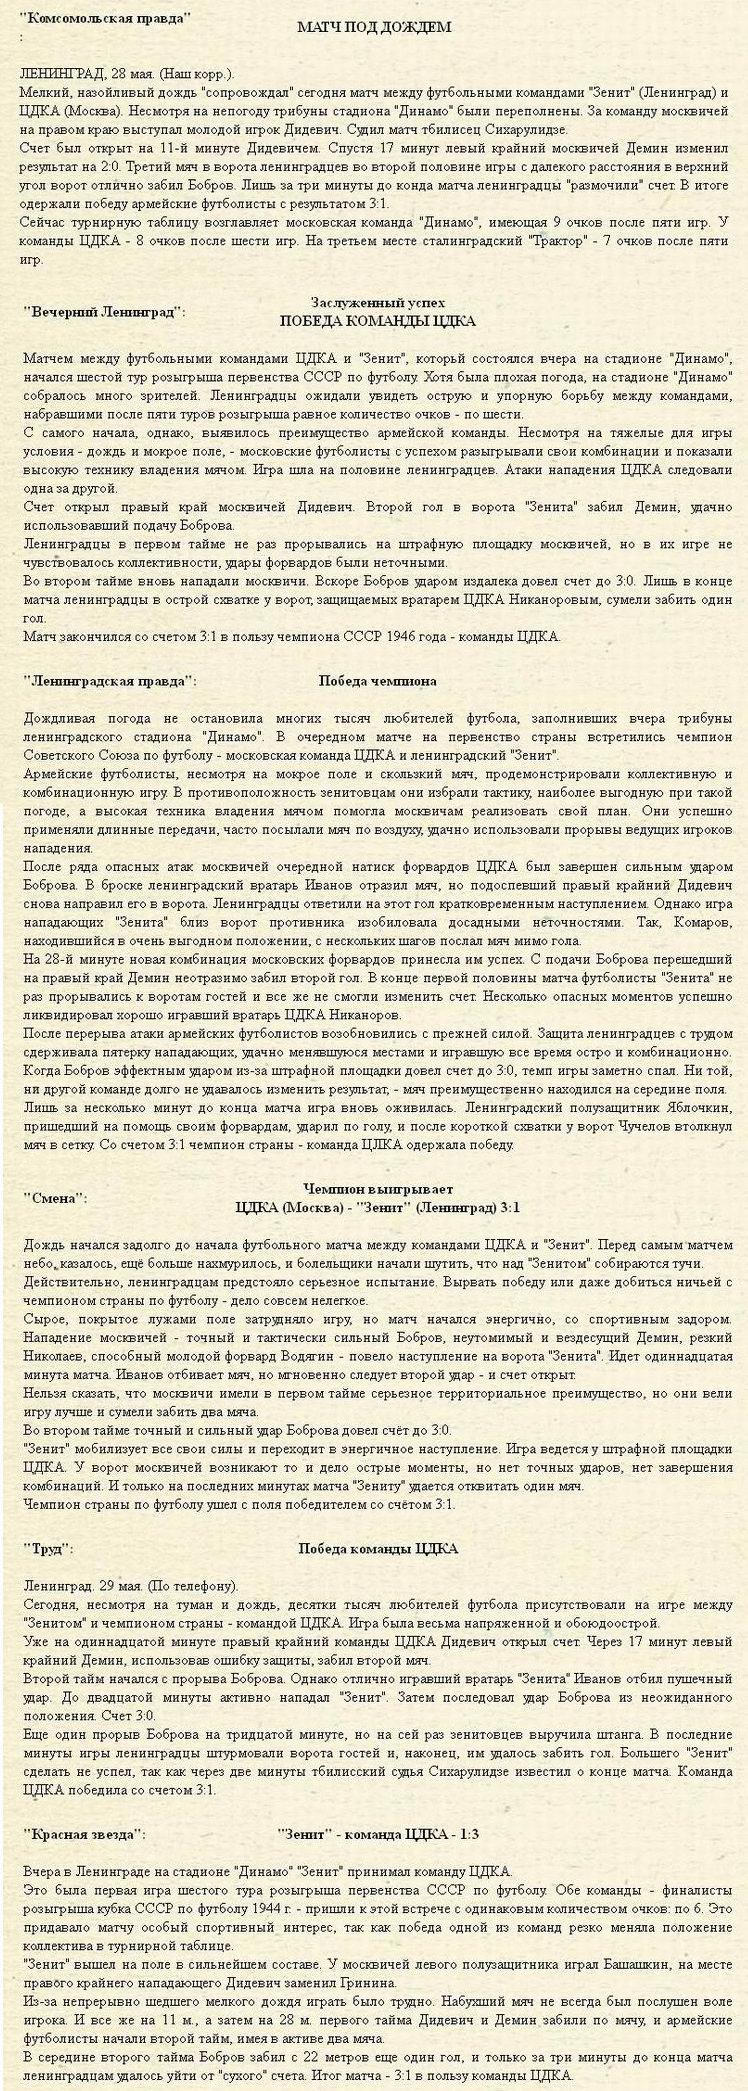 1947-05-28.Zenit-CDKA